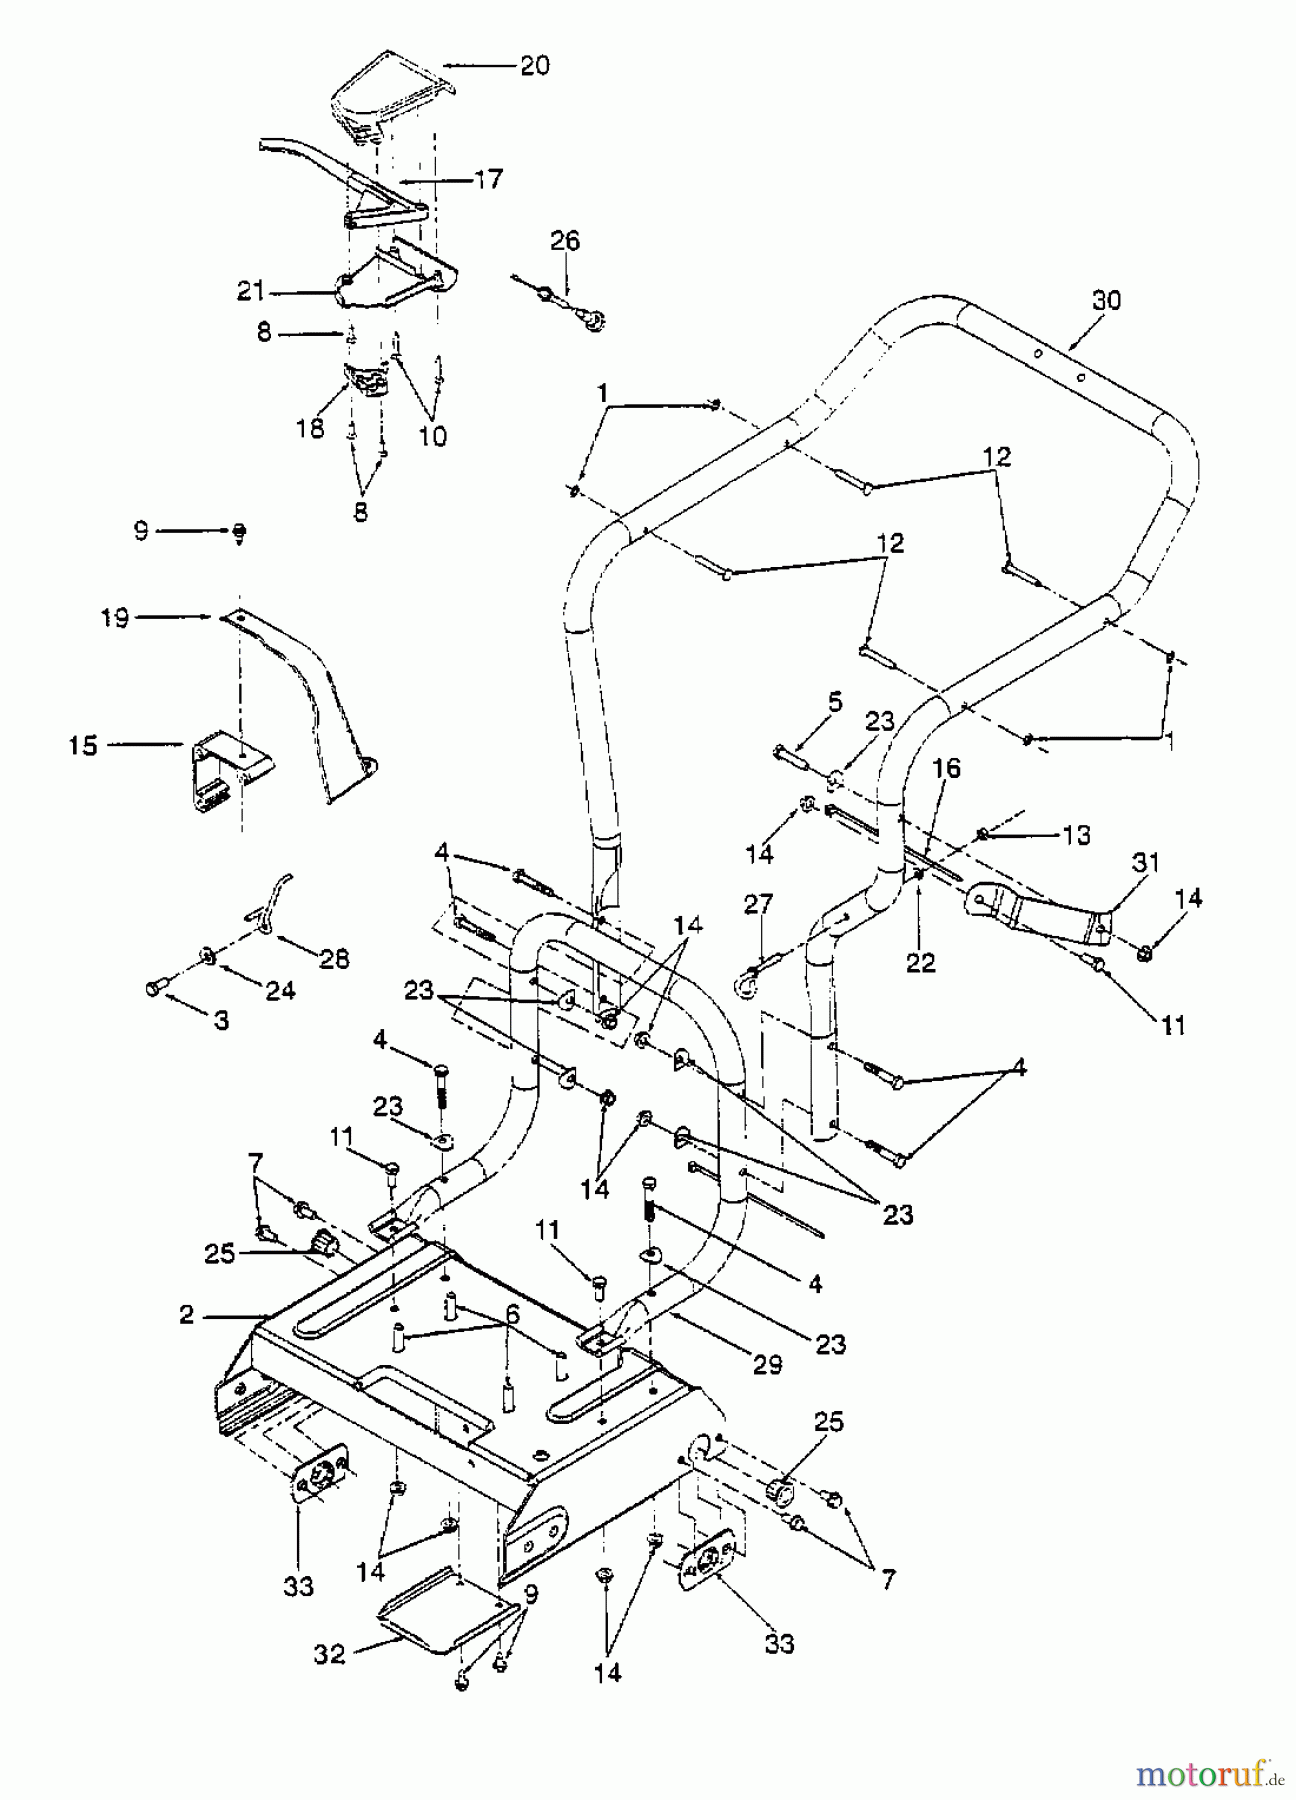  Gutbrod Leaf blower, Blower vac 202 24A-202B604  (2000) Handle